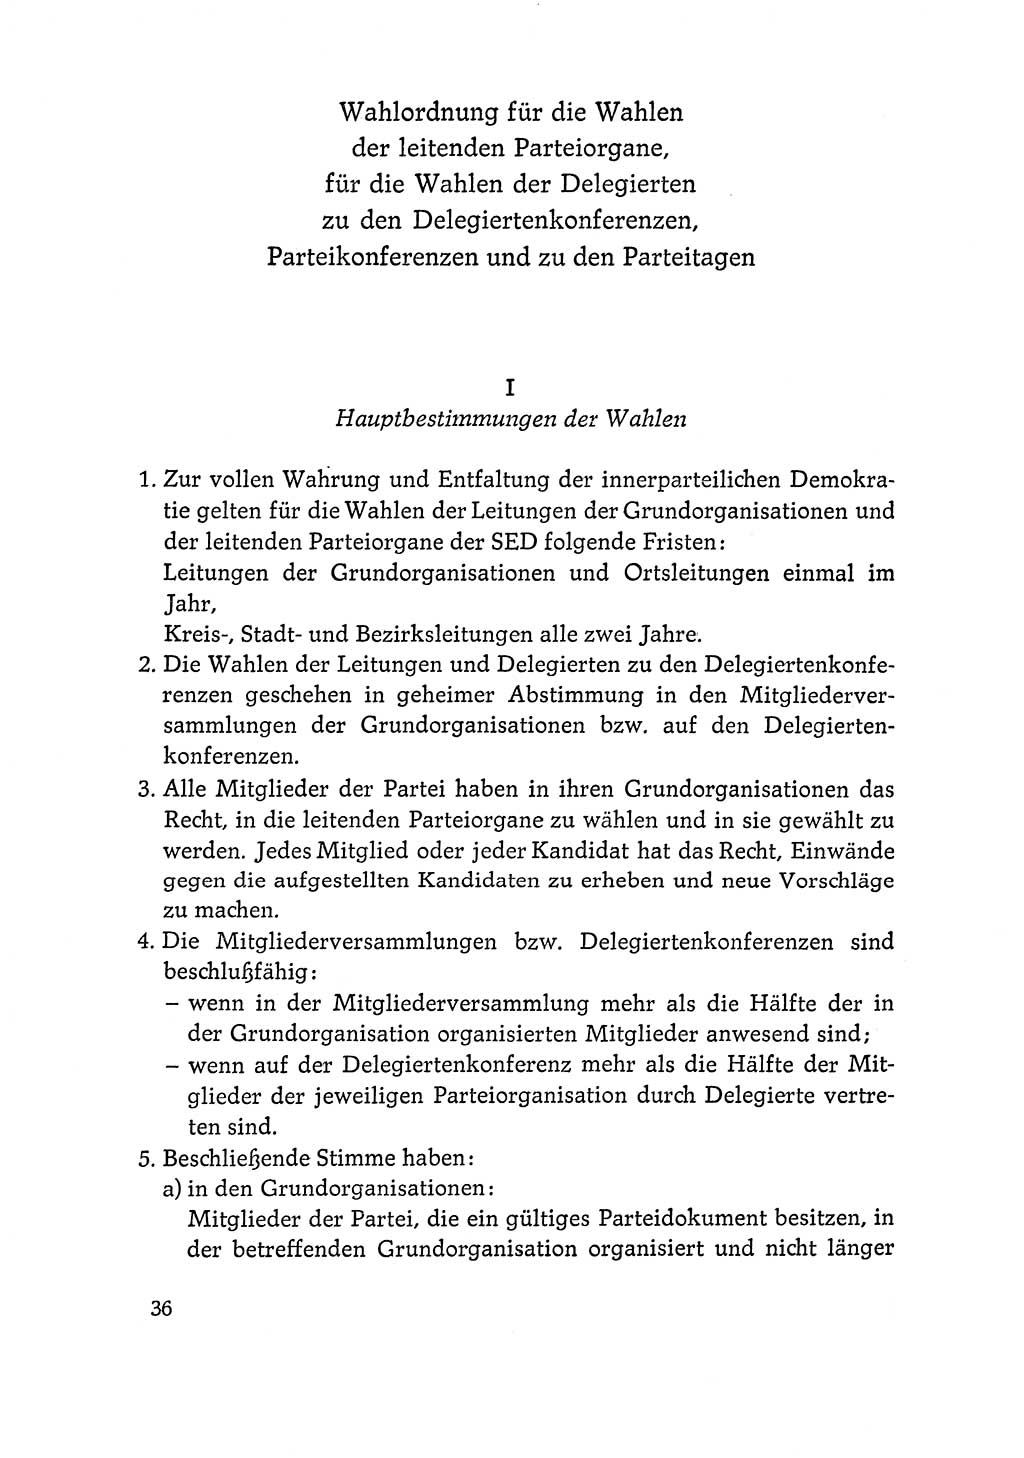 Dokumente der Sozialistischen Einheitspartei Deutschlands (SED) [Deutsche Demokratische Republik (DDR)] 1964-1965, Seite 36 (Dok. SED DDR 1964-1965, S. 36)